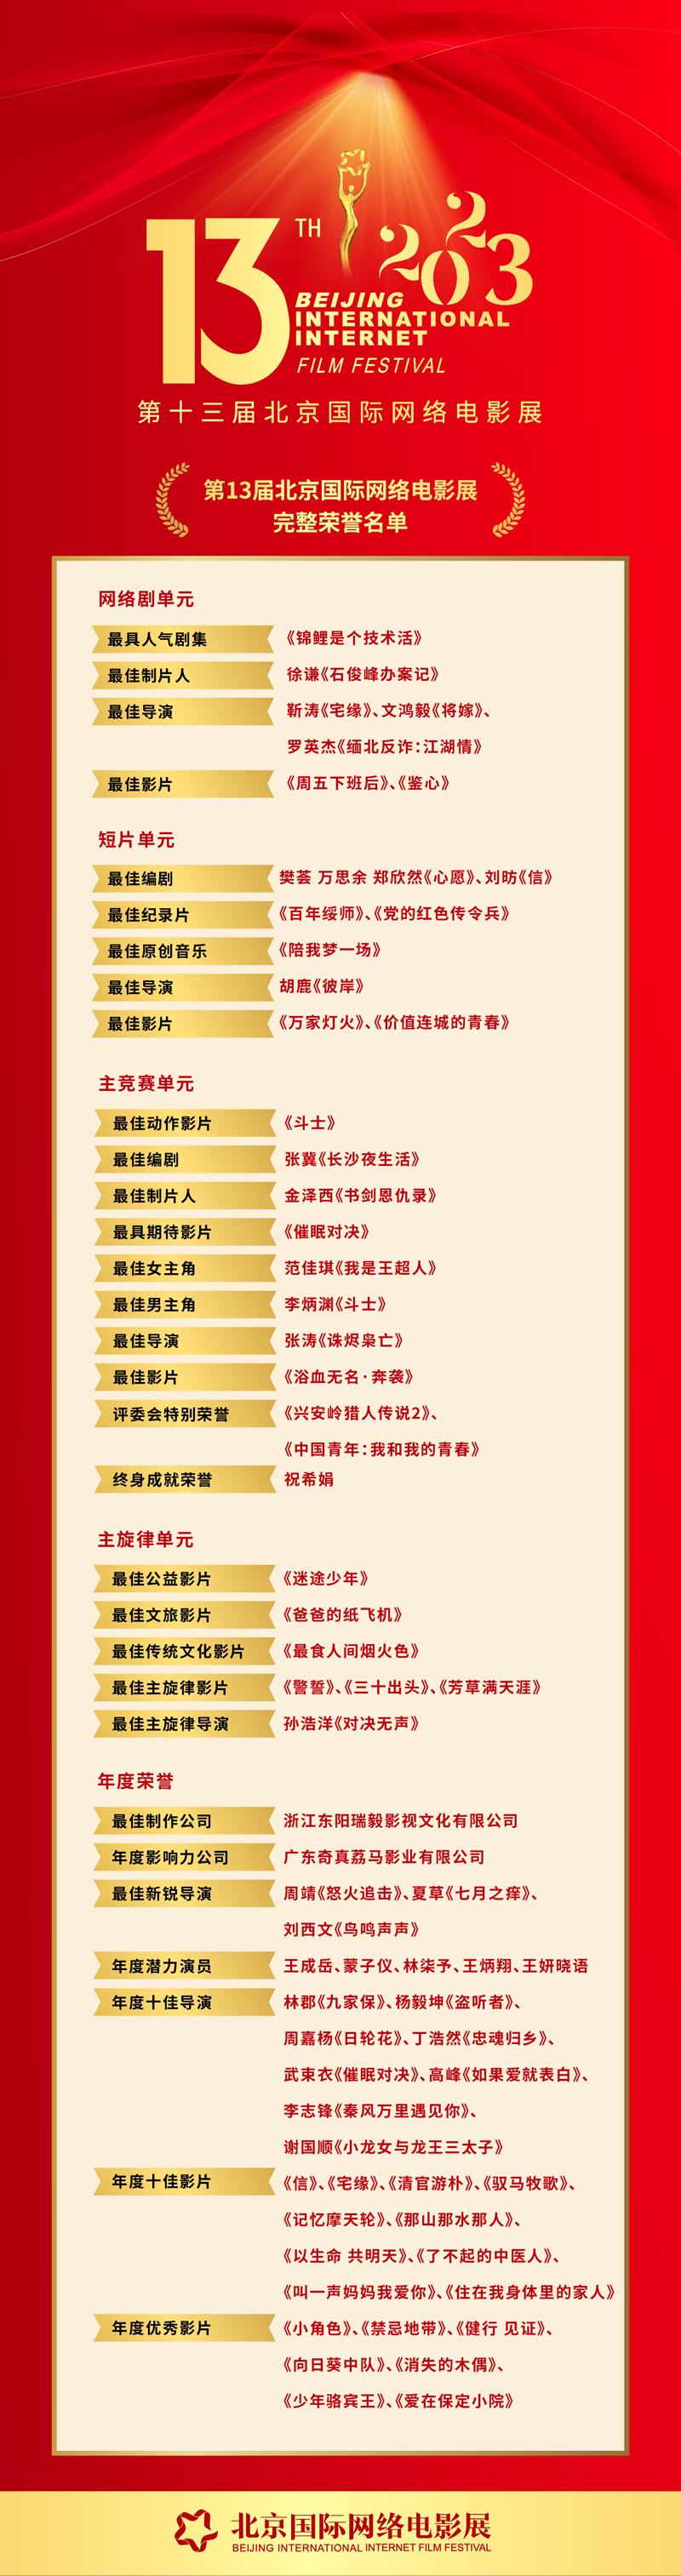 第十三届北京国际网络电影节闭幕 “光年奖”名单公布